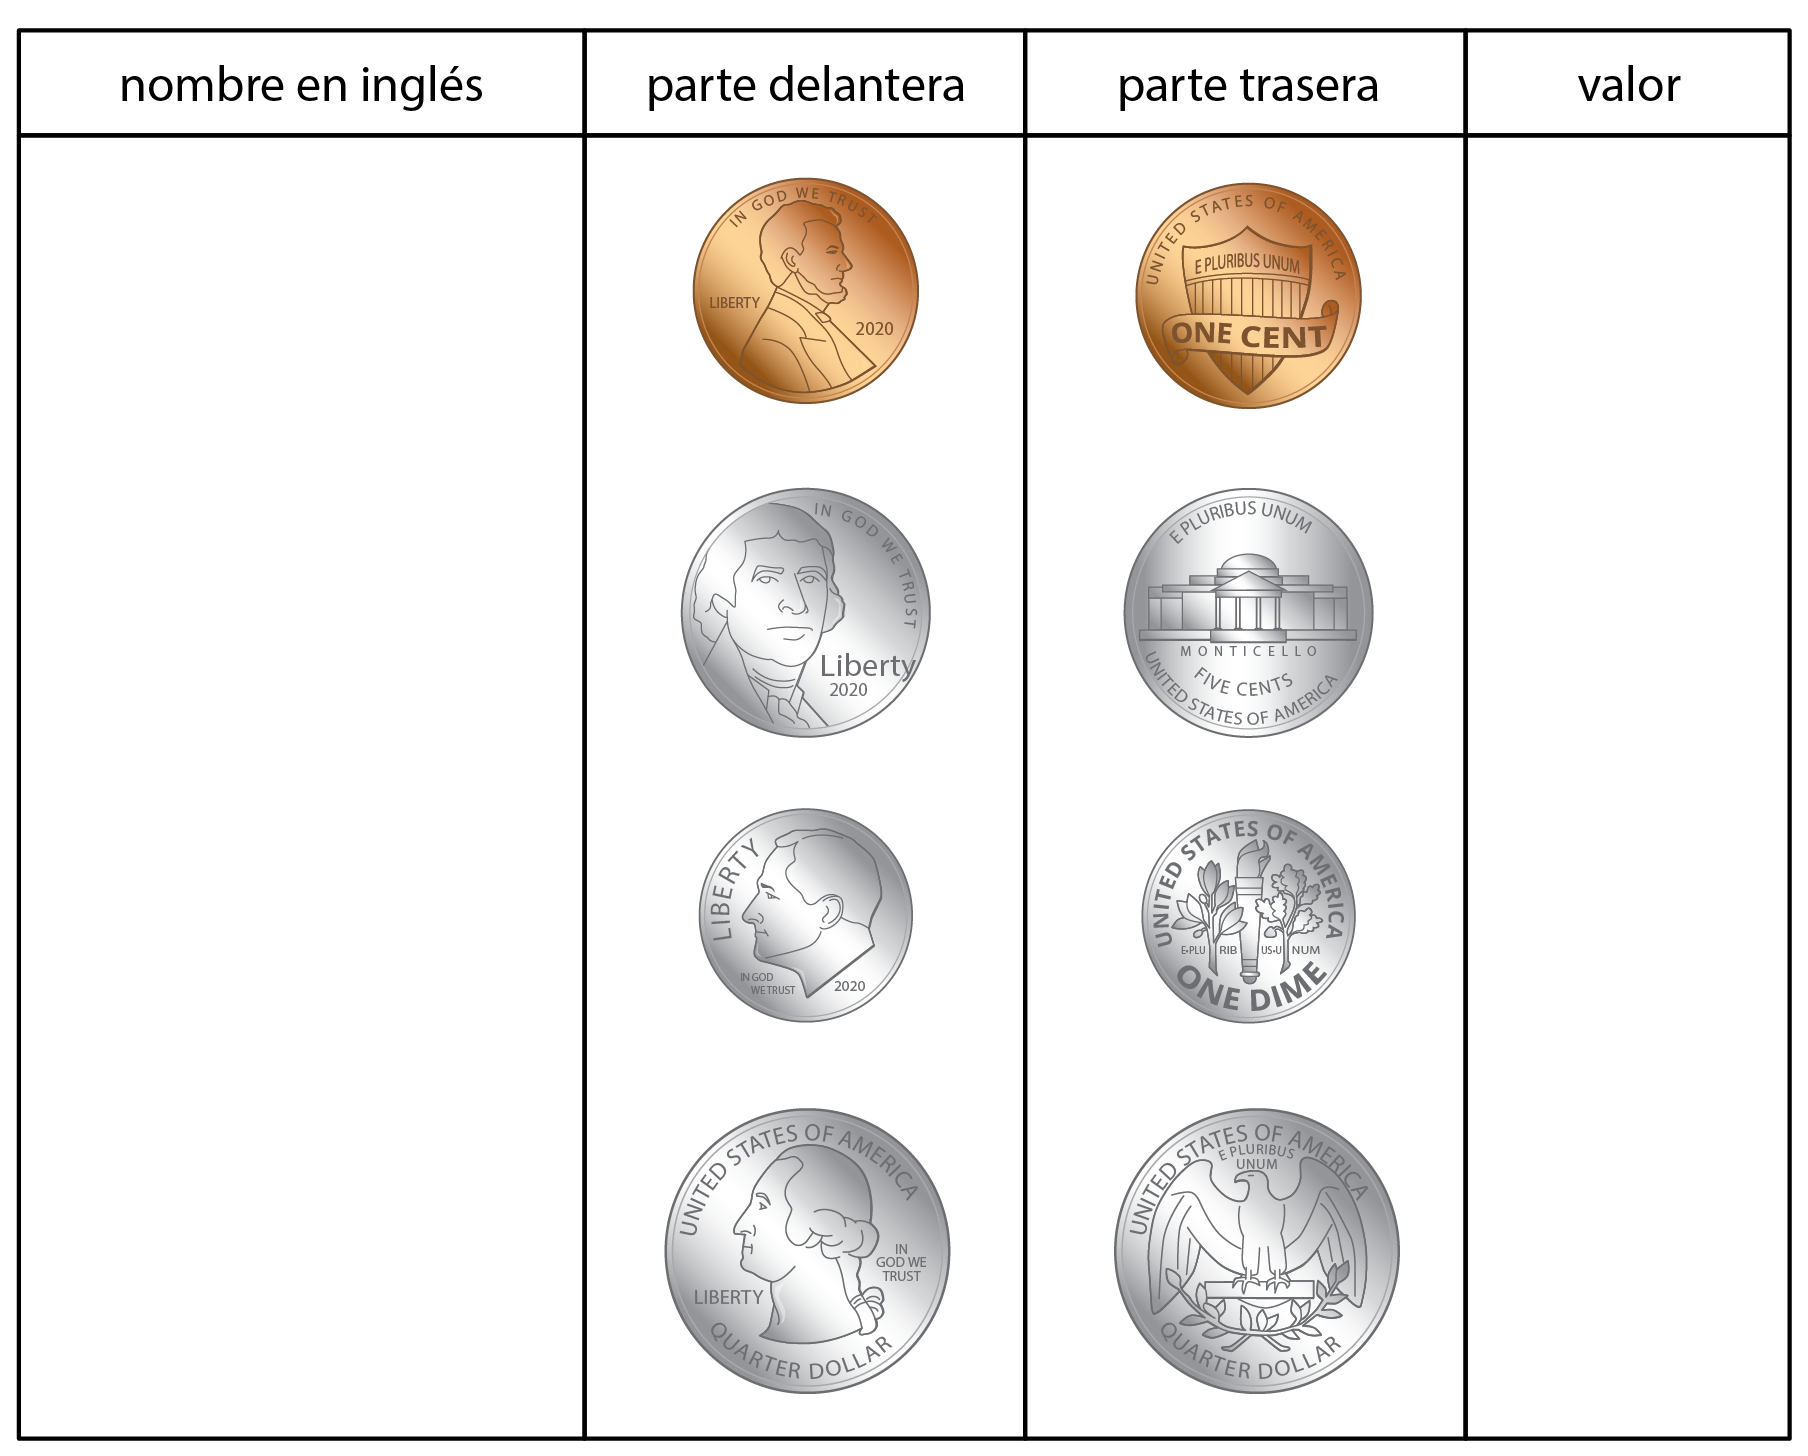 Tabla para anotar el nombre en inglés y el valor de cada moneda que se muestra. Las monedas que se muestran son pennies, nickels, dimes y quarters.